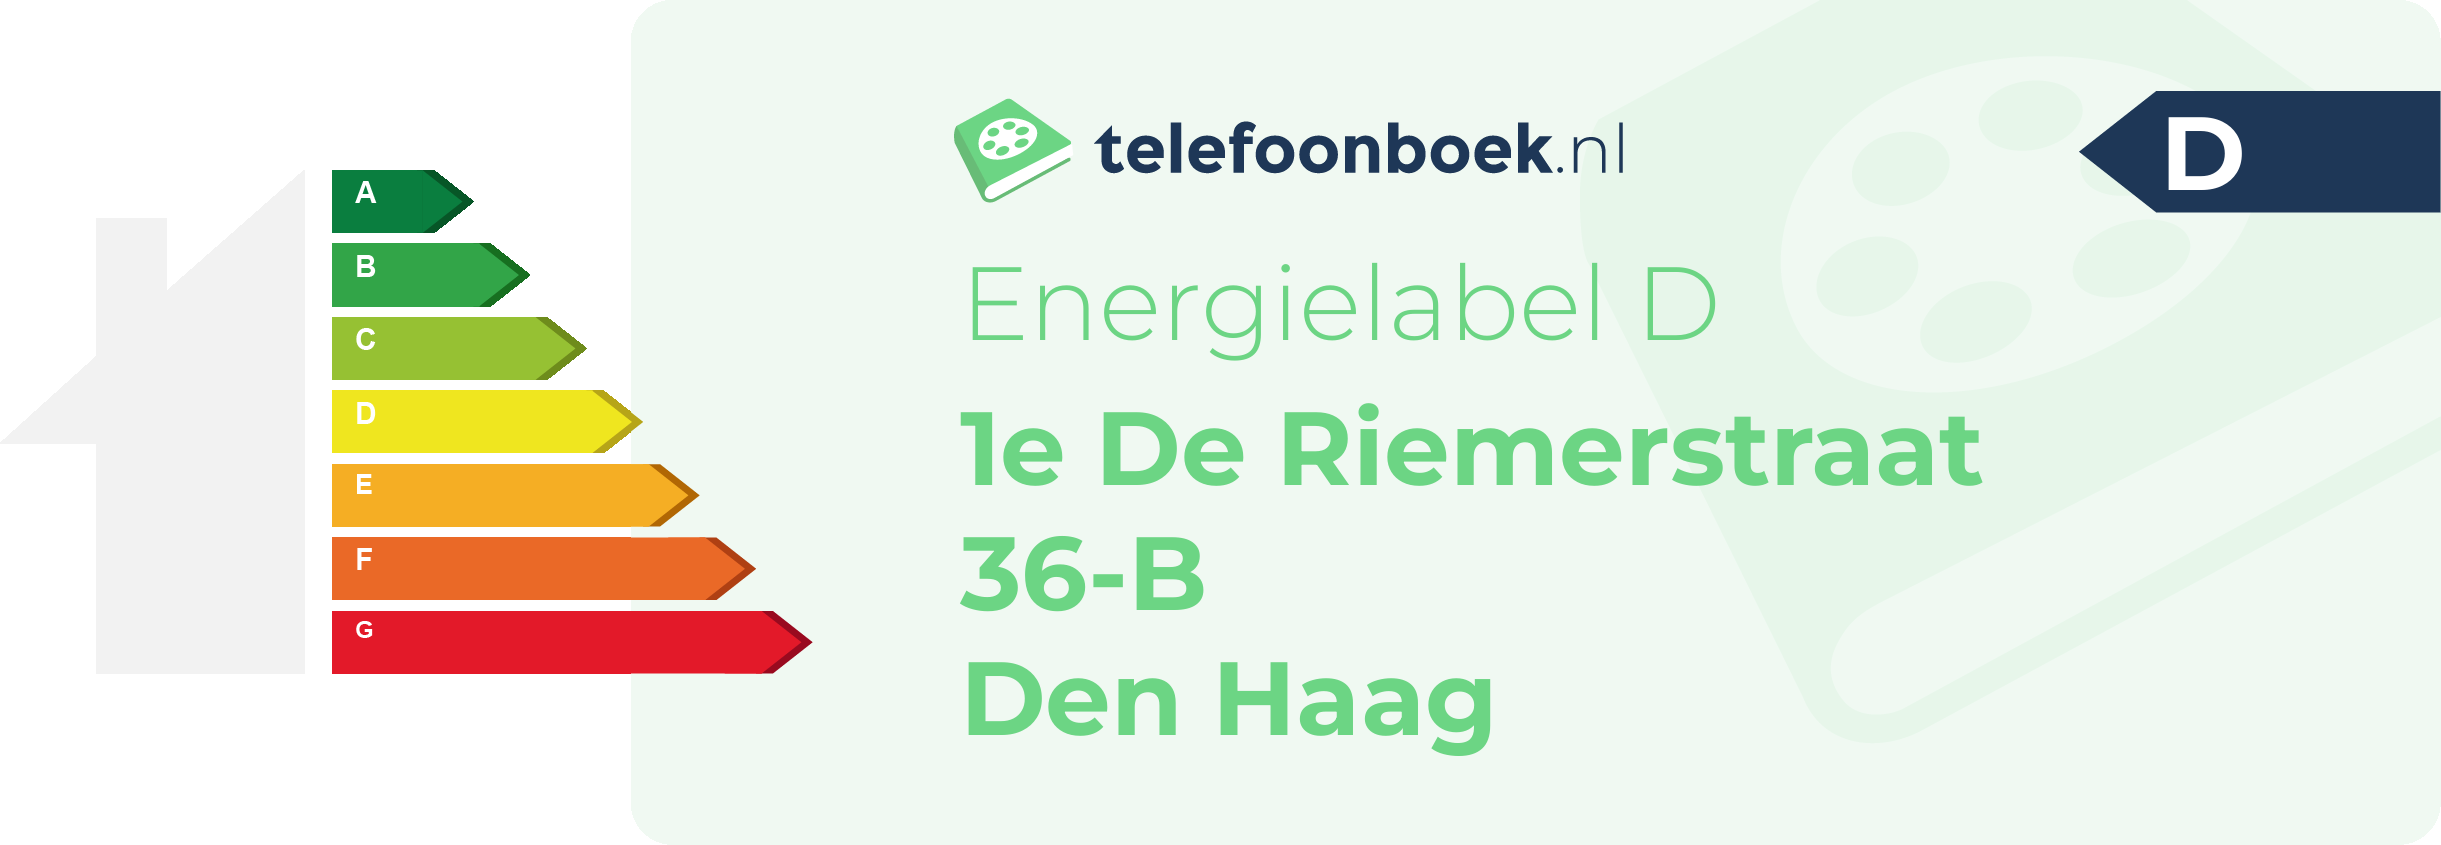 Energielabel 1e De Riemerstraat 36-B Den Haag